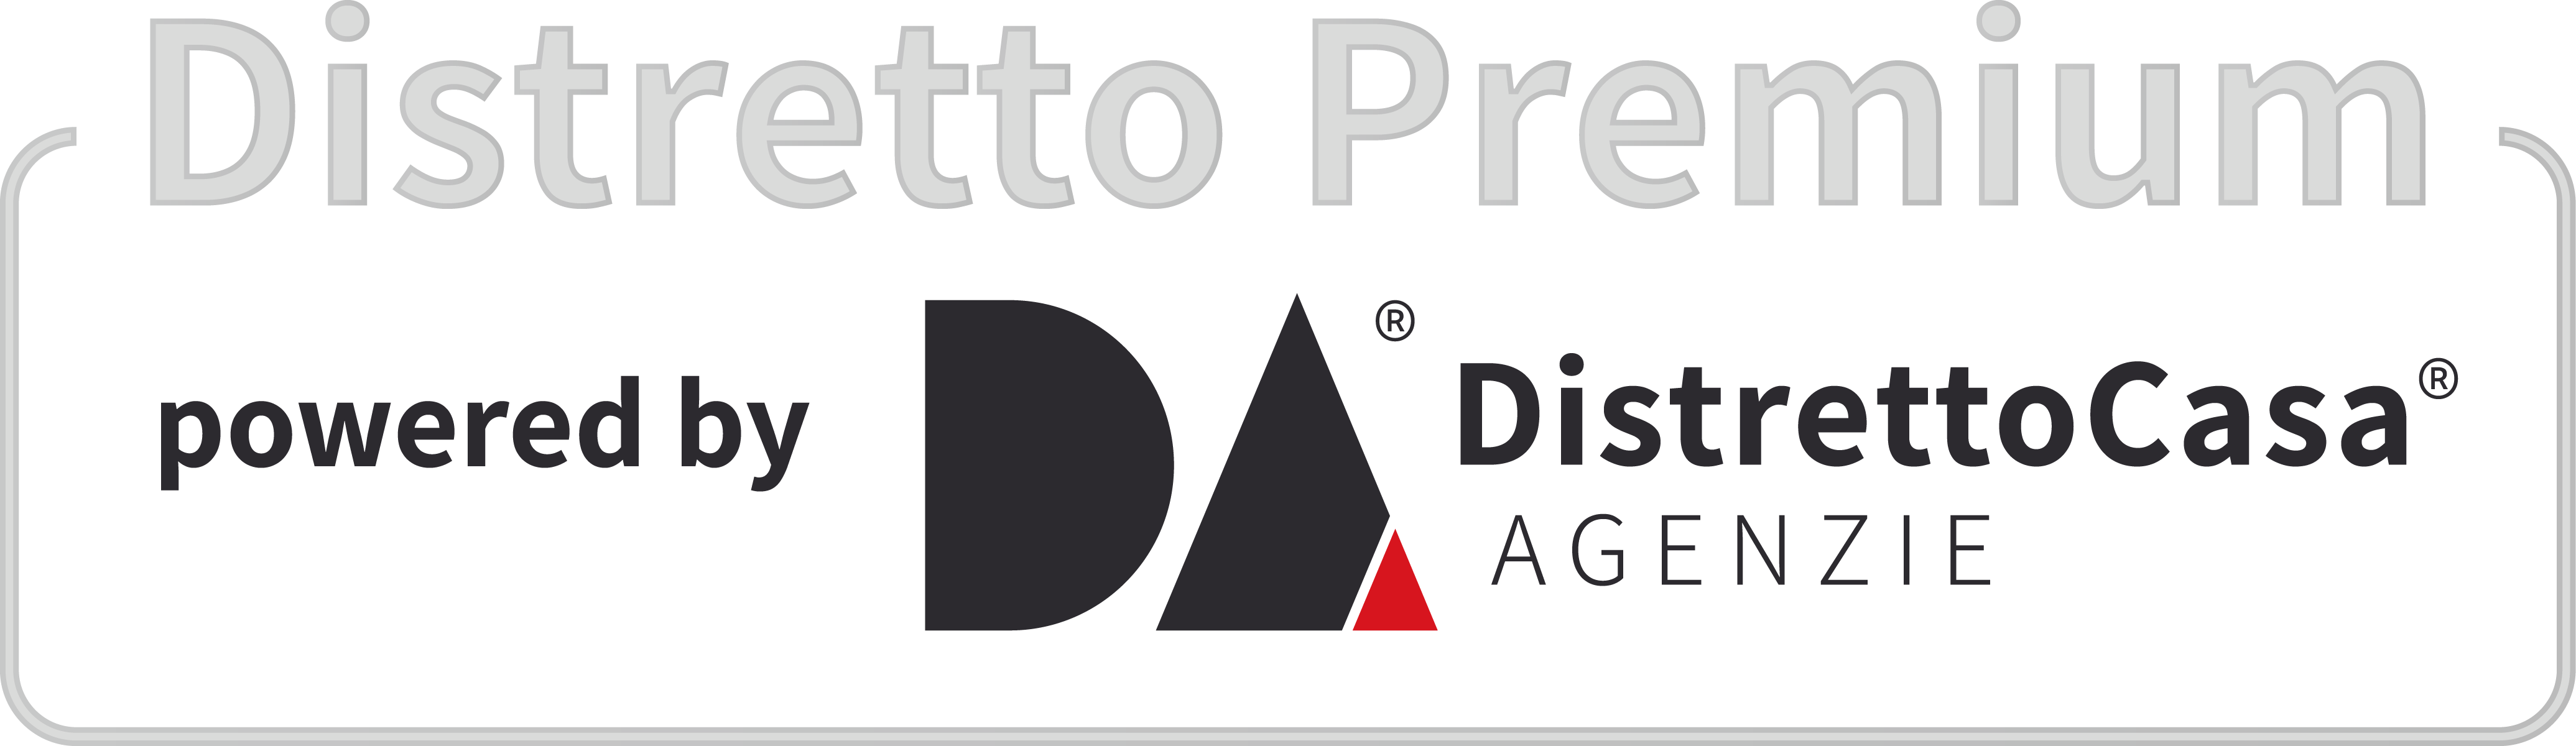 Distretto Premium - Distretto Casa Agenzie - 2